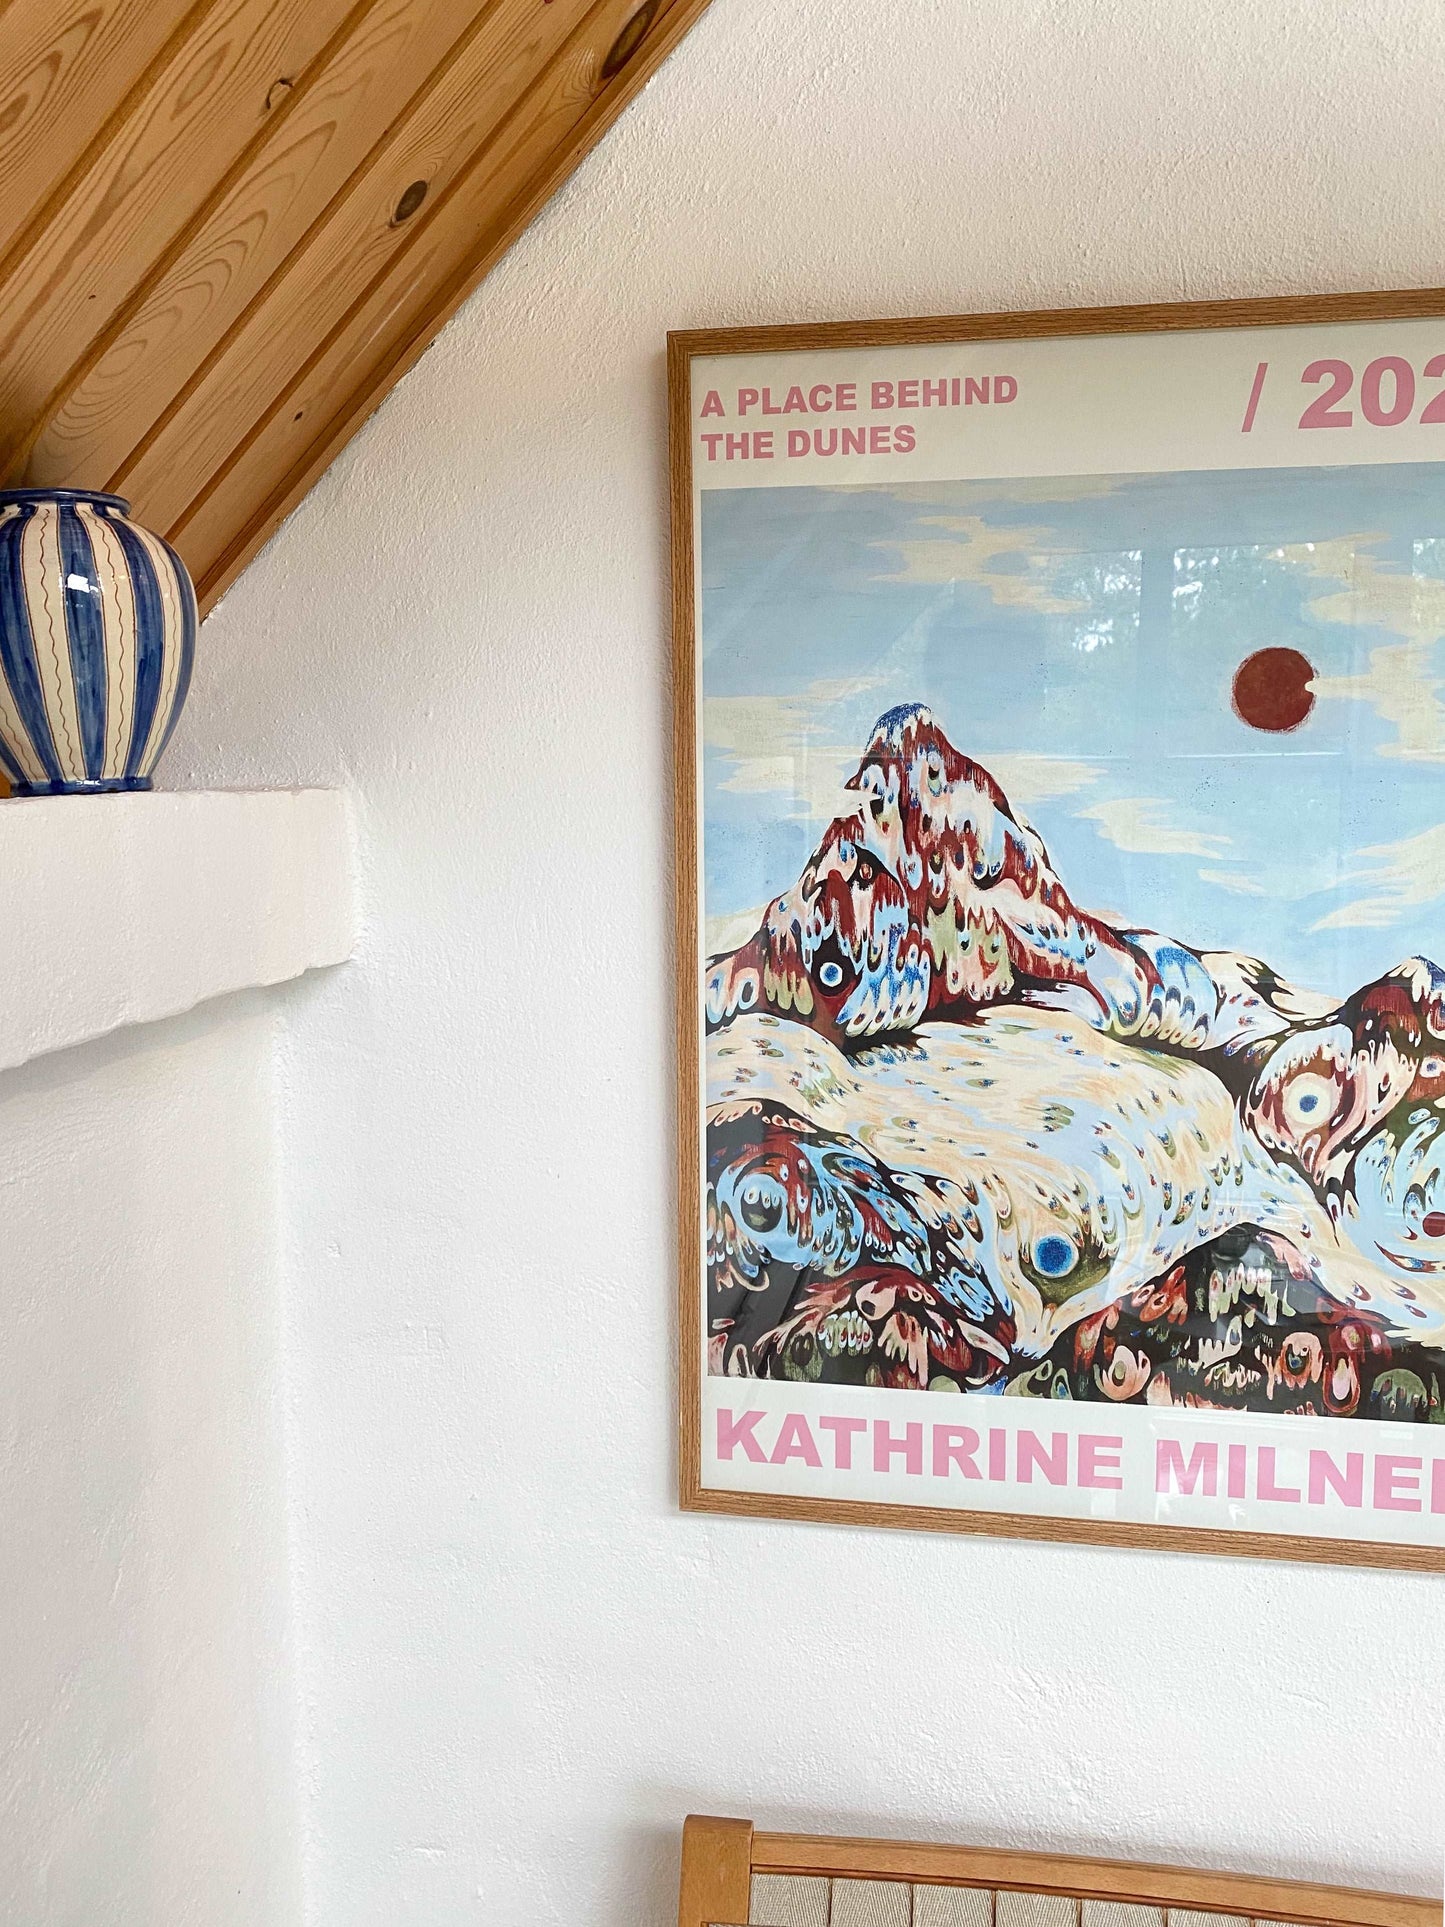 Kunstplakaten A place behind the dunes af Kathrine Milner i vores stue i sommerhuset